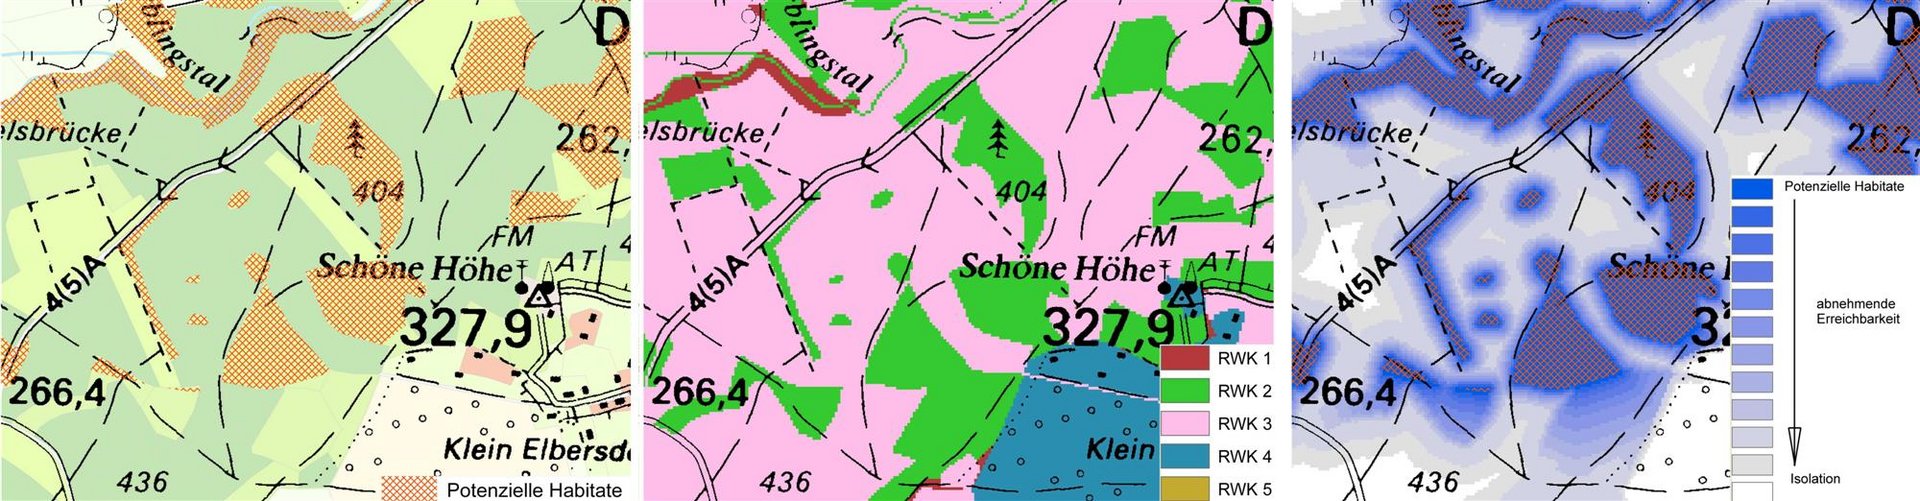 Potenzielle Habitate, Kostenoberfläche und Ergebnisgrid des Feuersalamanders (Salamandra salamandra) westlich von Dürrröhrsdorf-Dittersbach